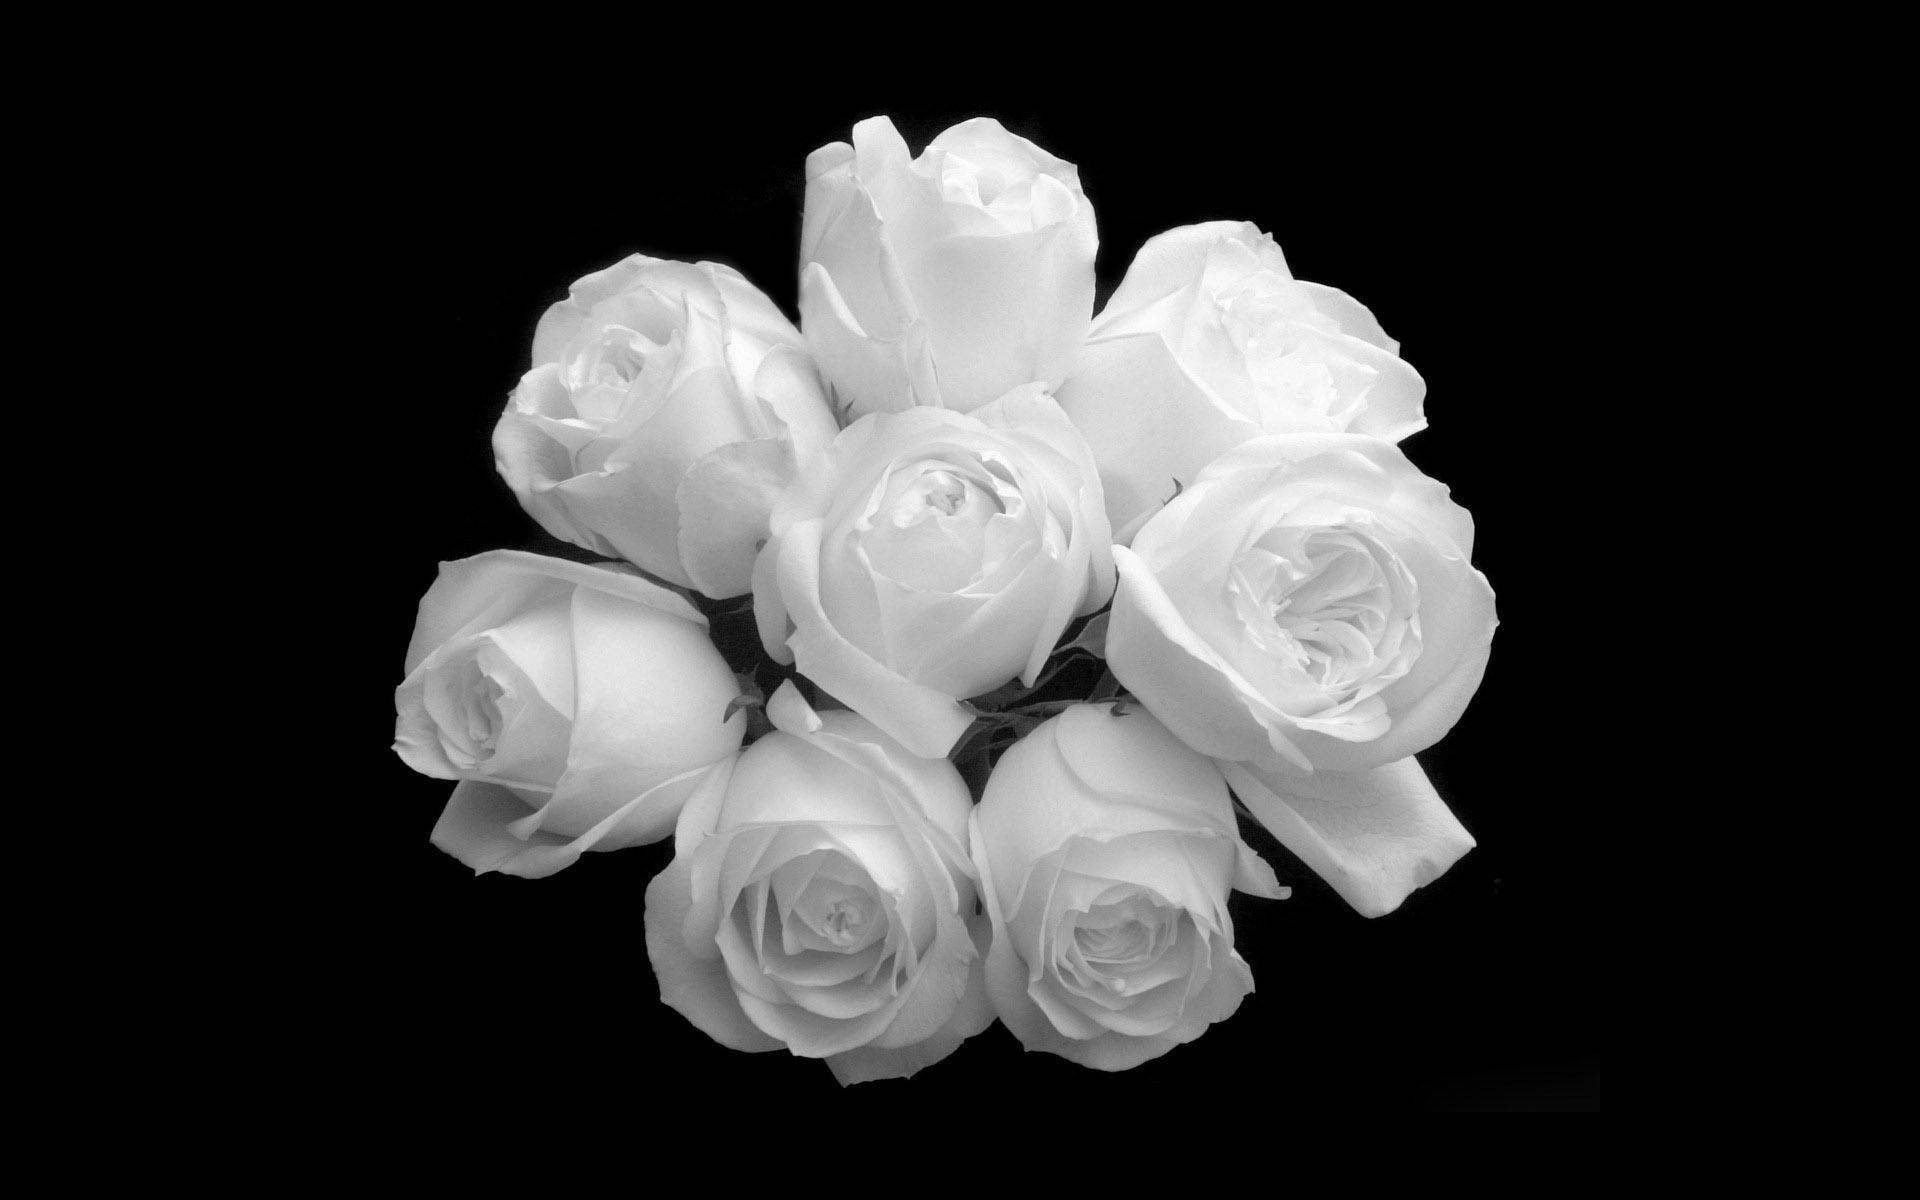 white rose wallpaper desktop